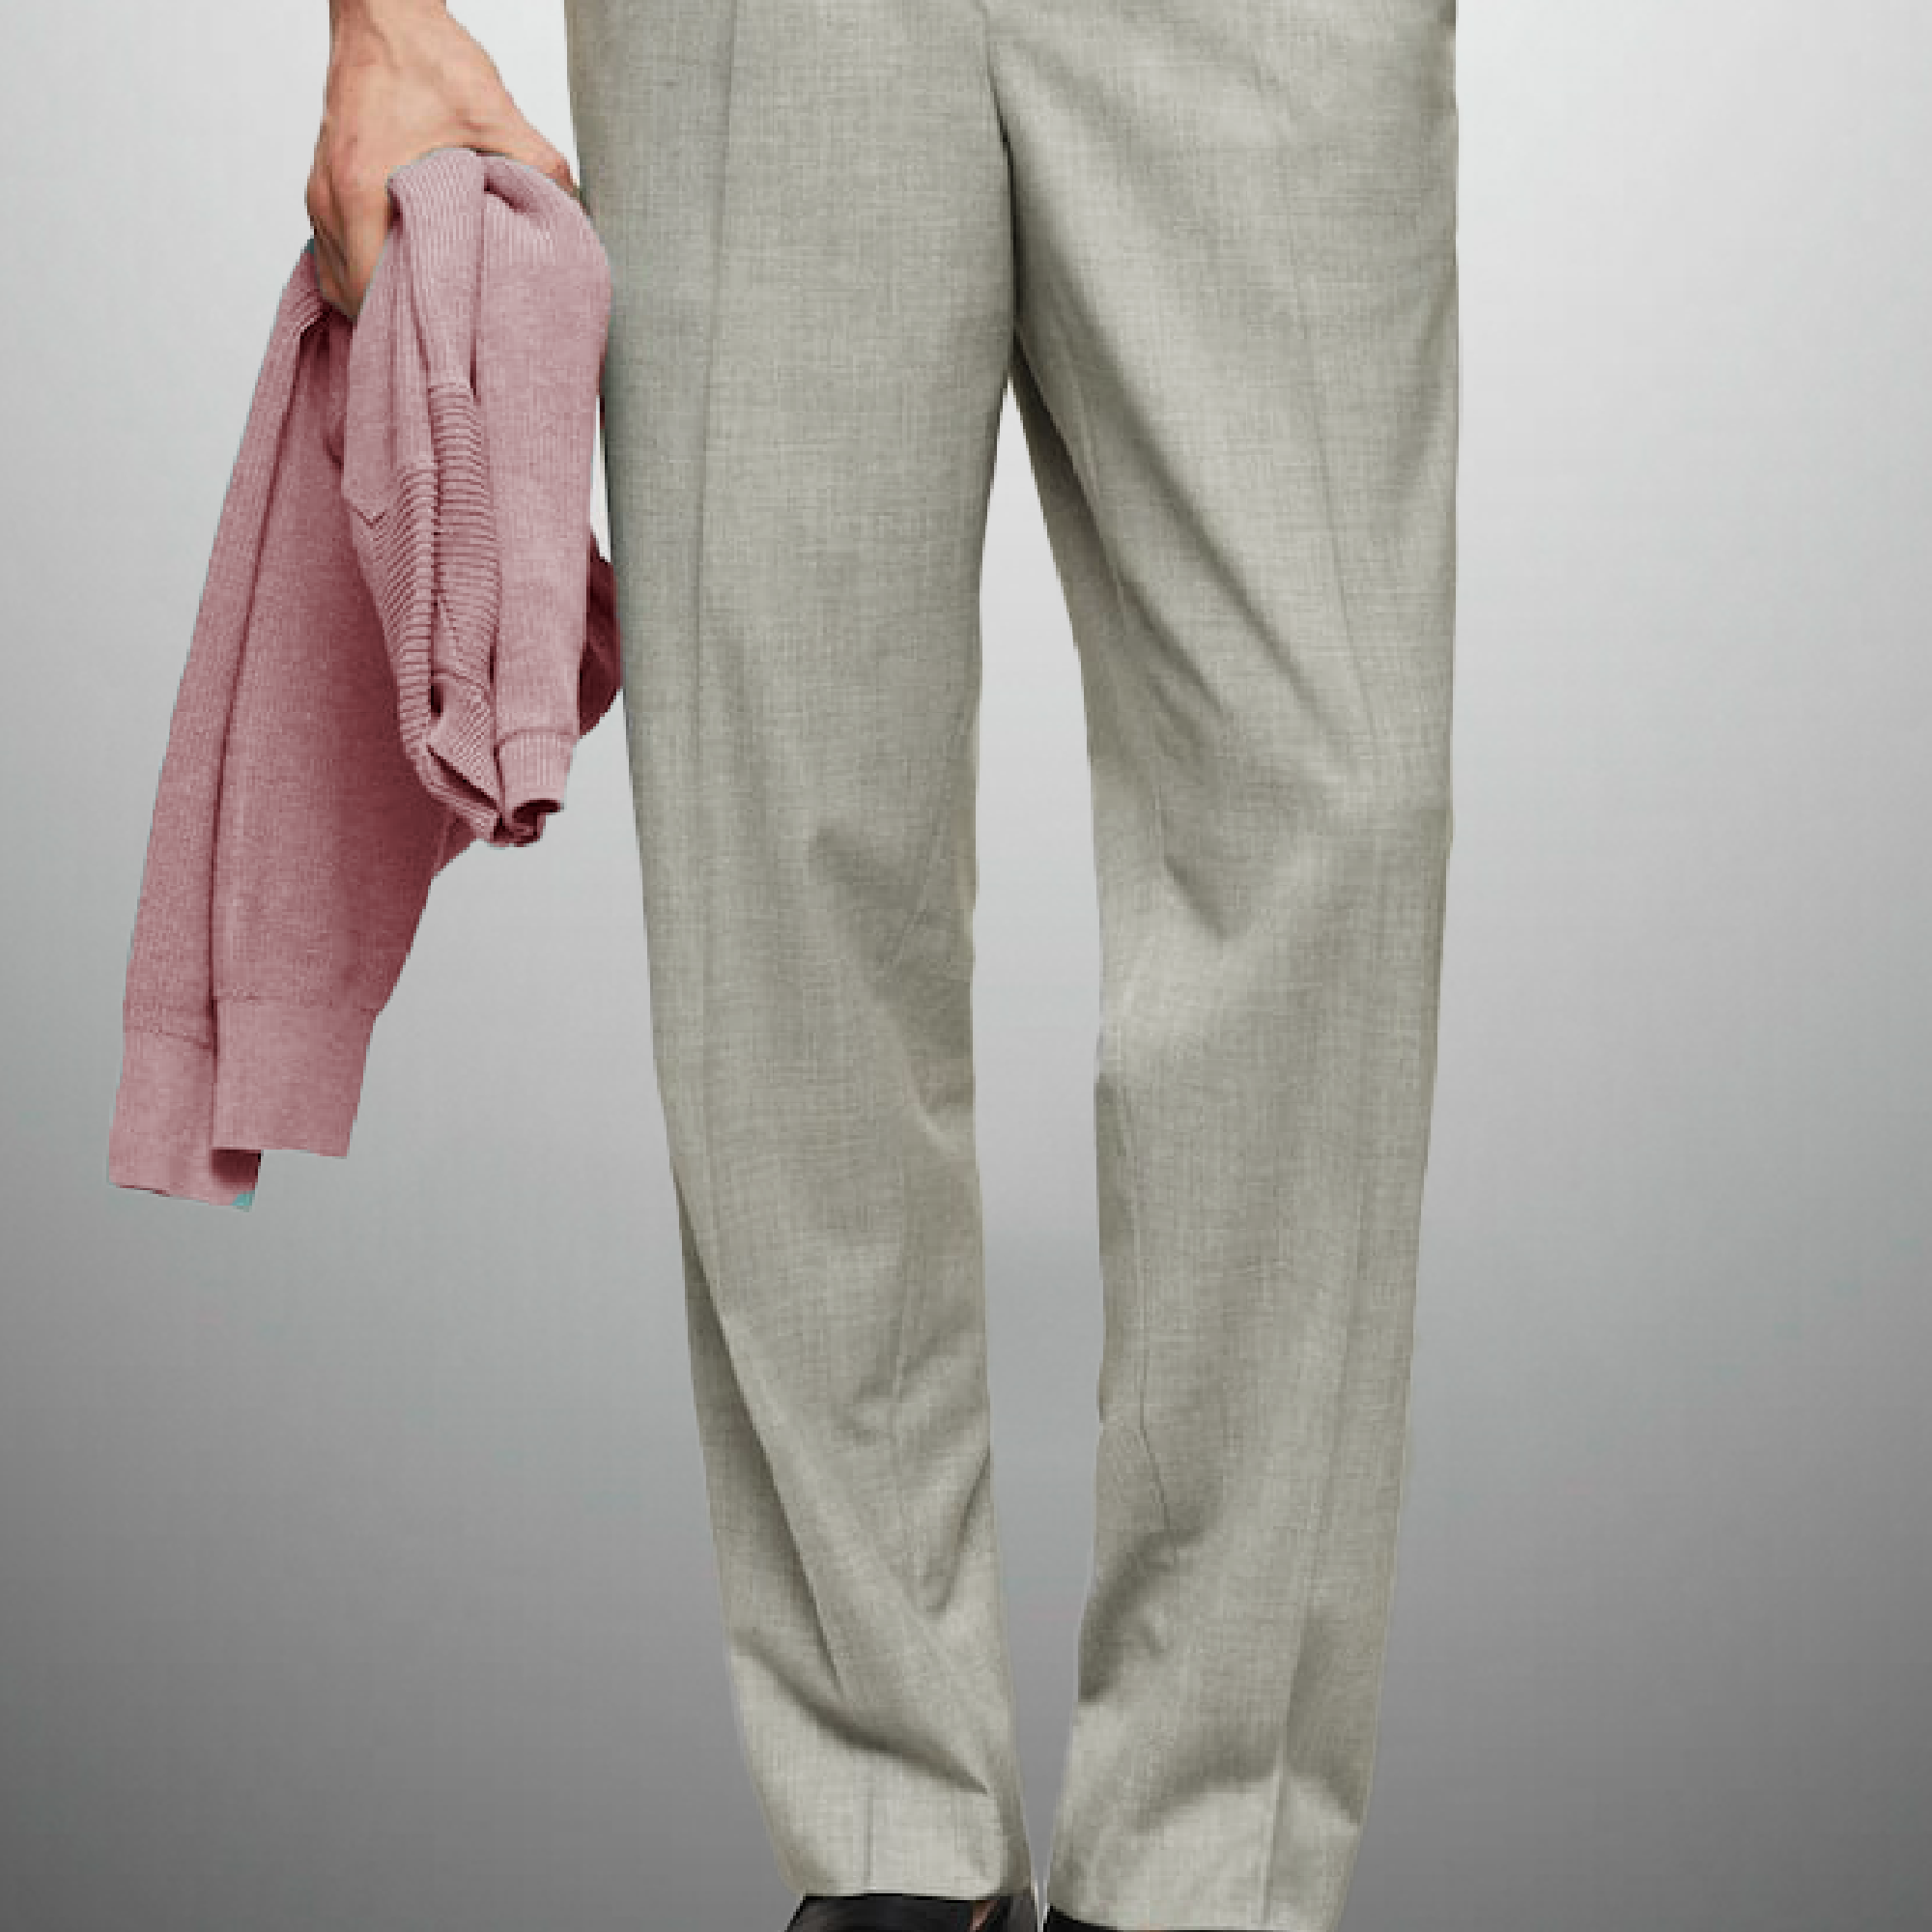 Men's Grey Pants with elastic Waist-RMT010